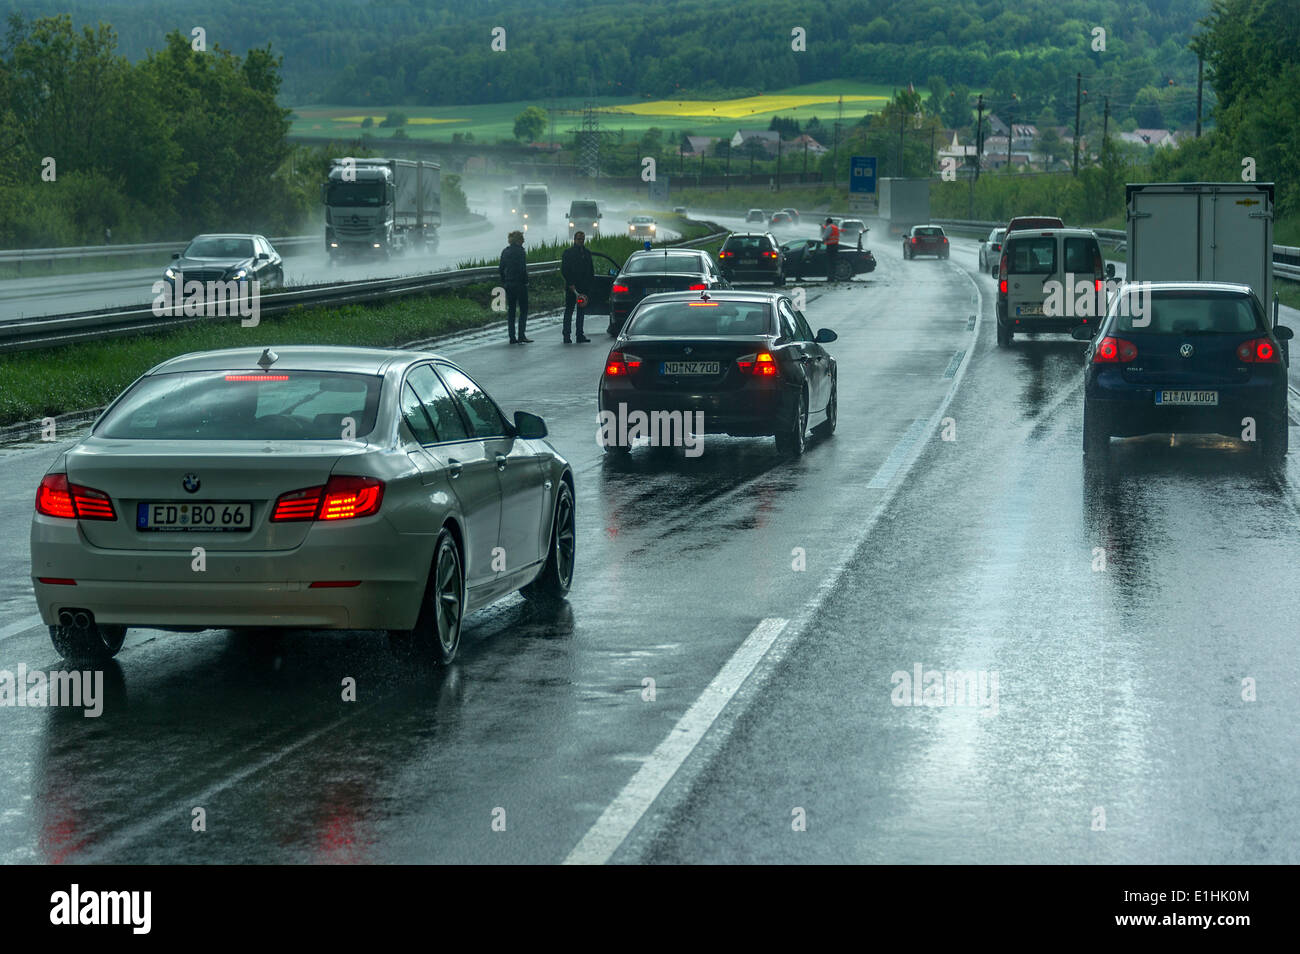 Accident lors de fortes pluies avec une mauvaise visibilité, détournant les véhicules afin d'éviter un accident, l'autoroute A9, près de Thalmässing Banque D'Images